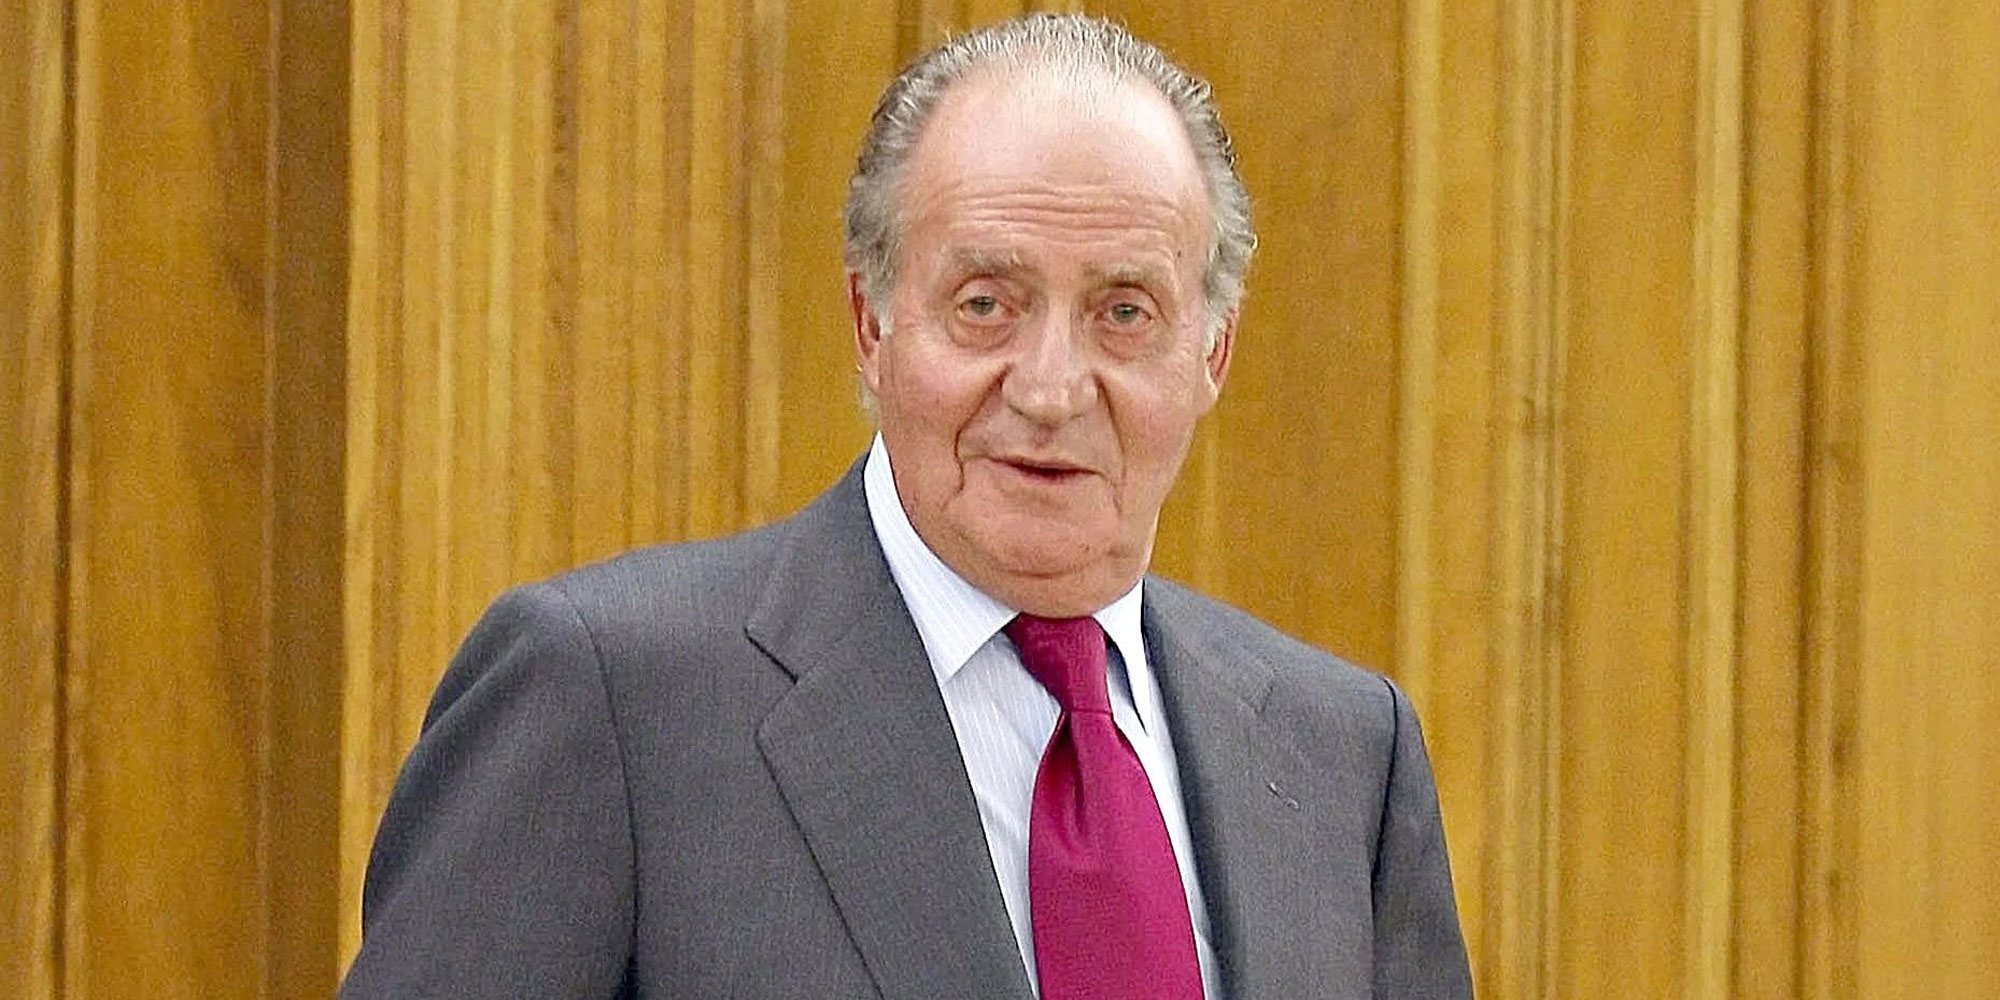 El fiscal suizo cierra la investigación sobre los 100 millones de dólares que Arabia Saudí había entregado al Rey Juan Carlos